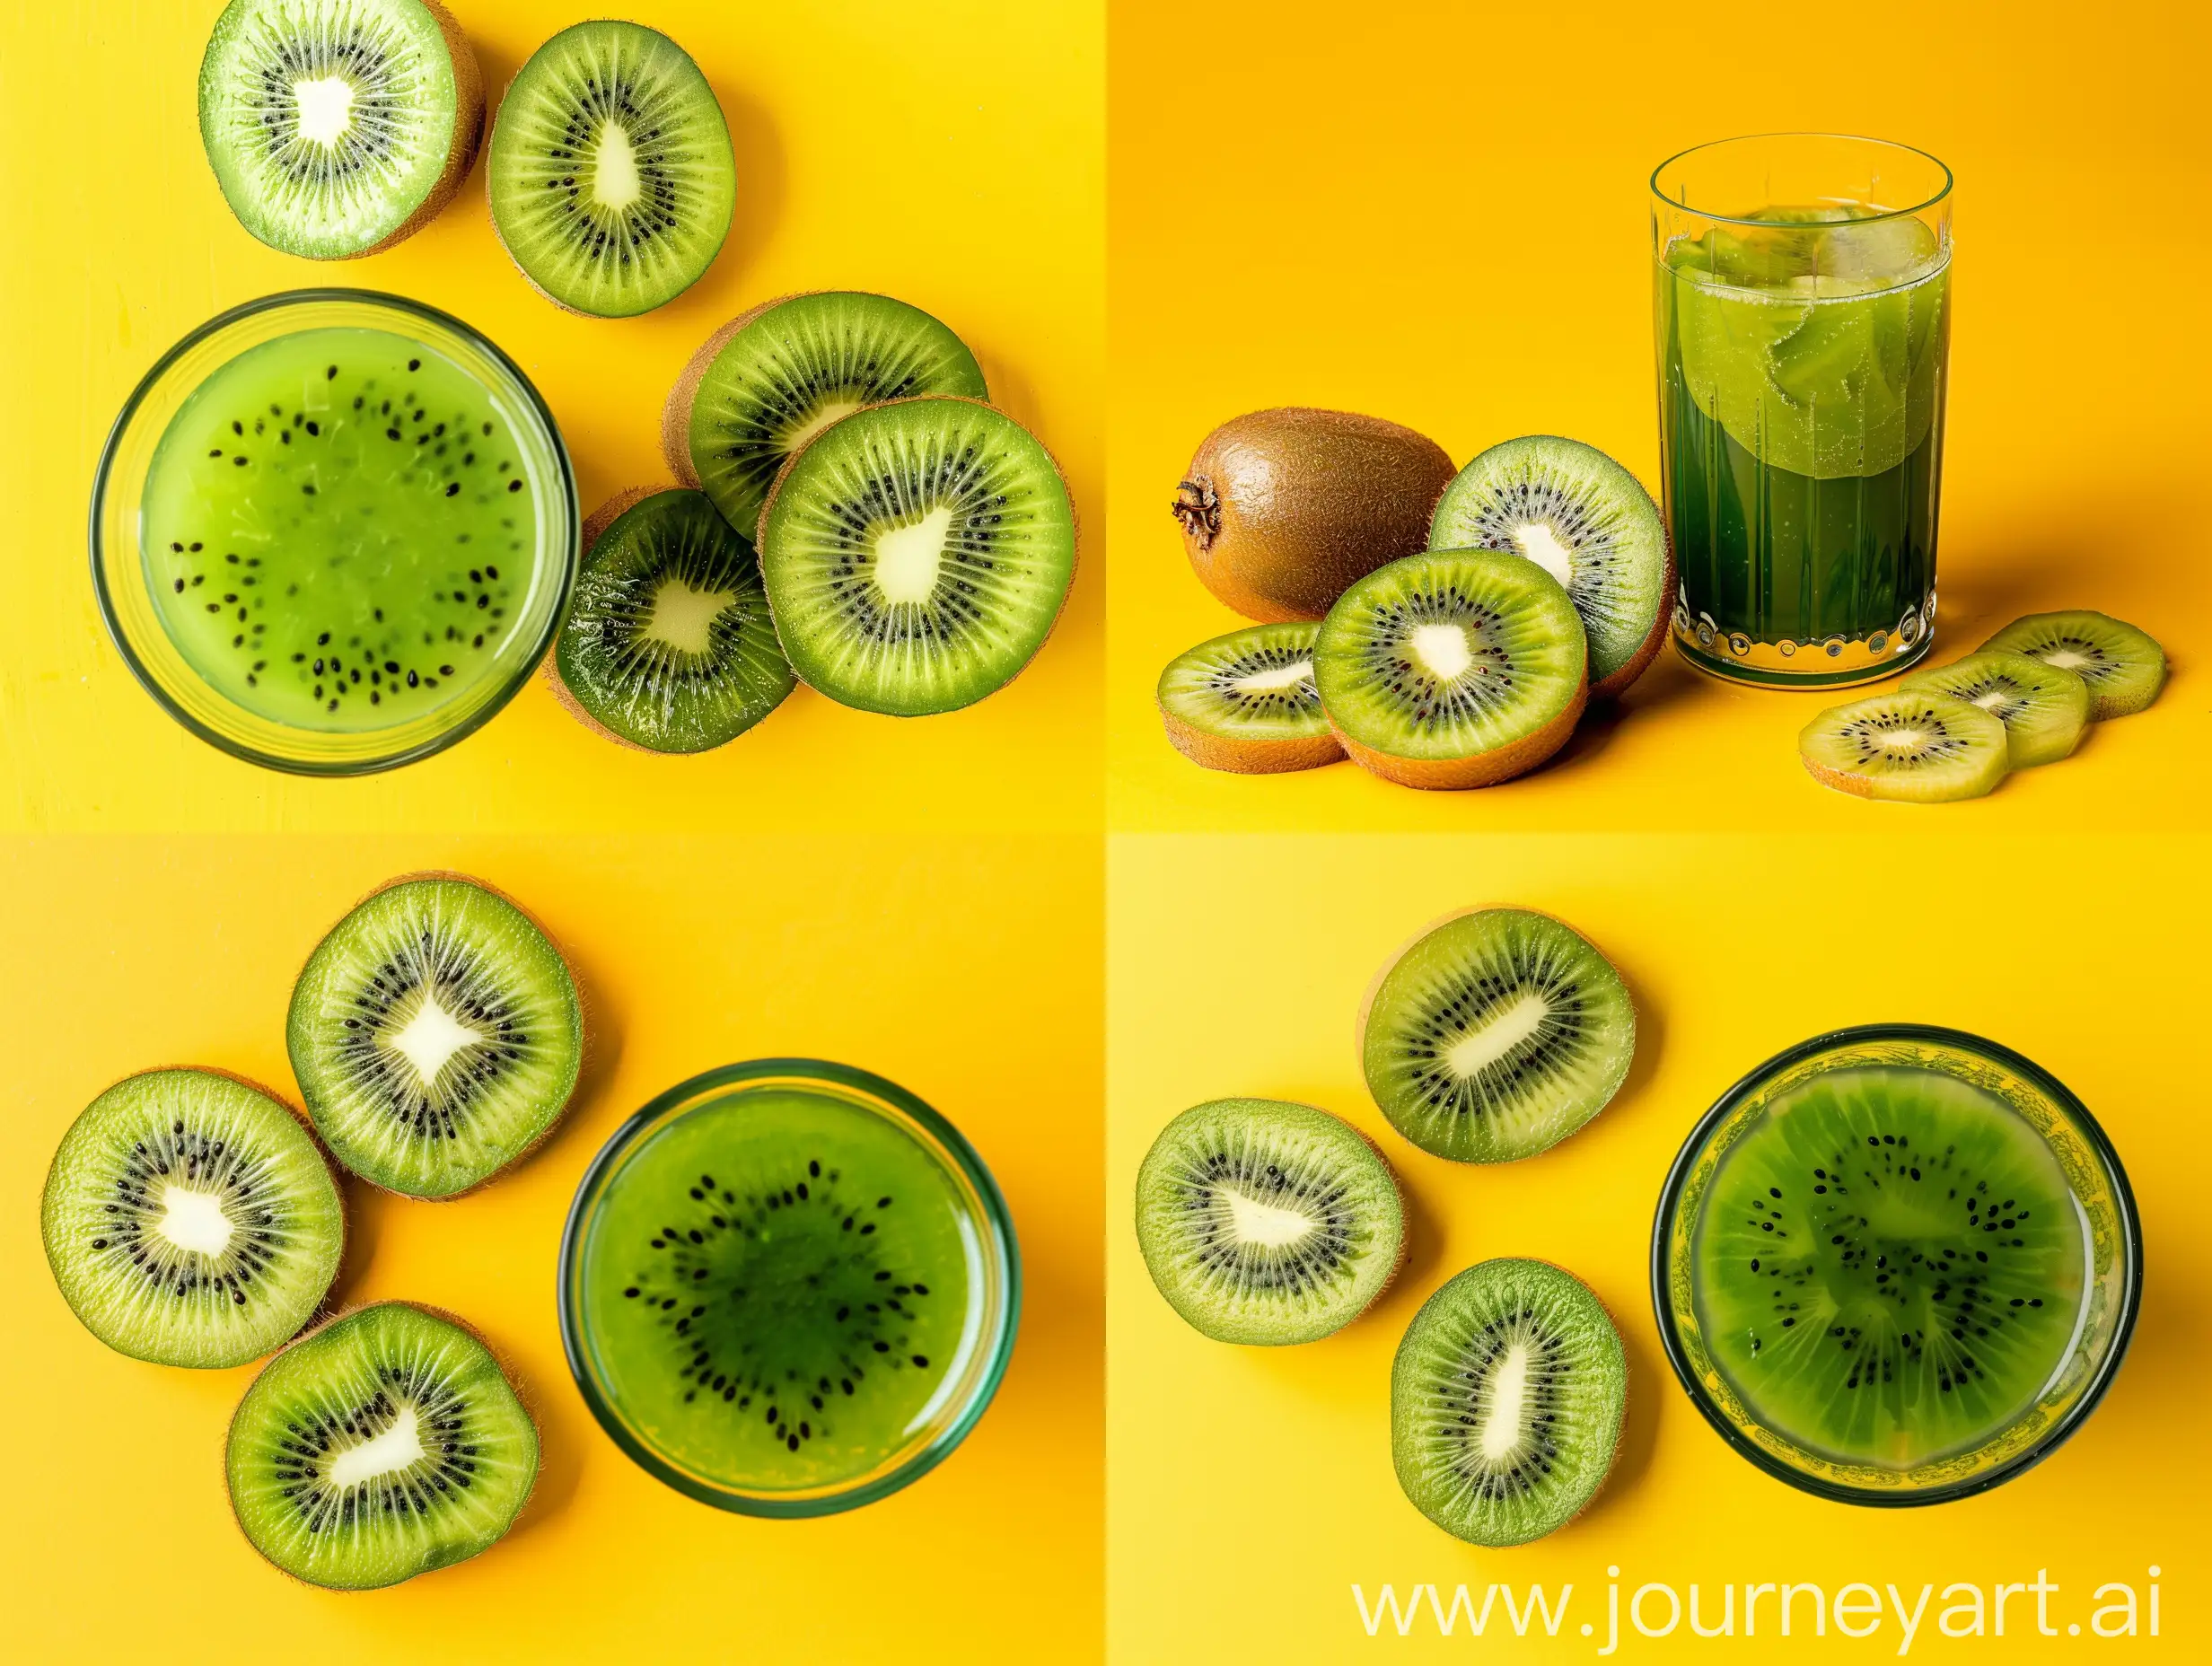 Refreshing-Kiwi-Juice-Drink-with-Fresh-Fruit-Slices-on-Vibrant-Yellow-Background